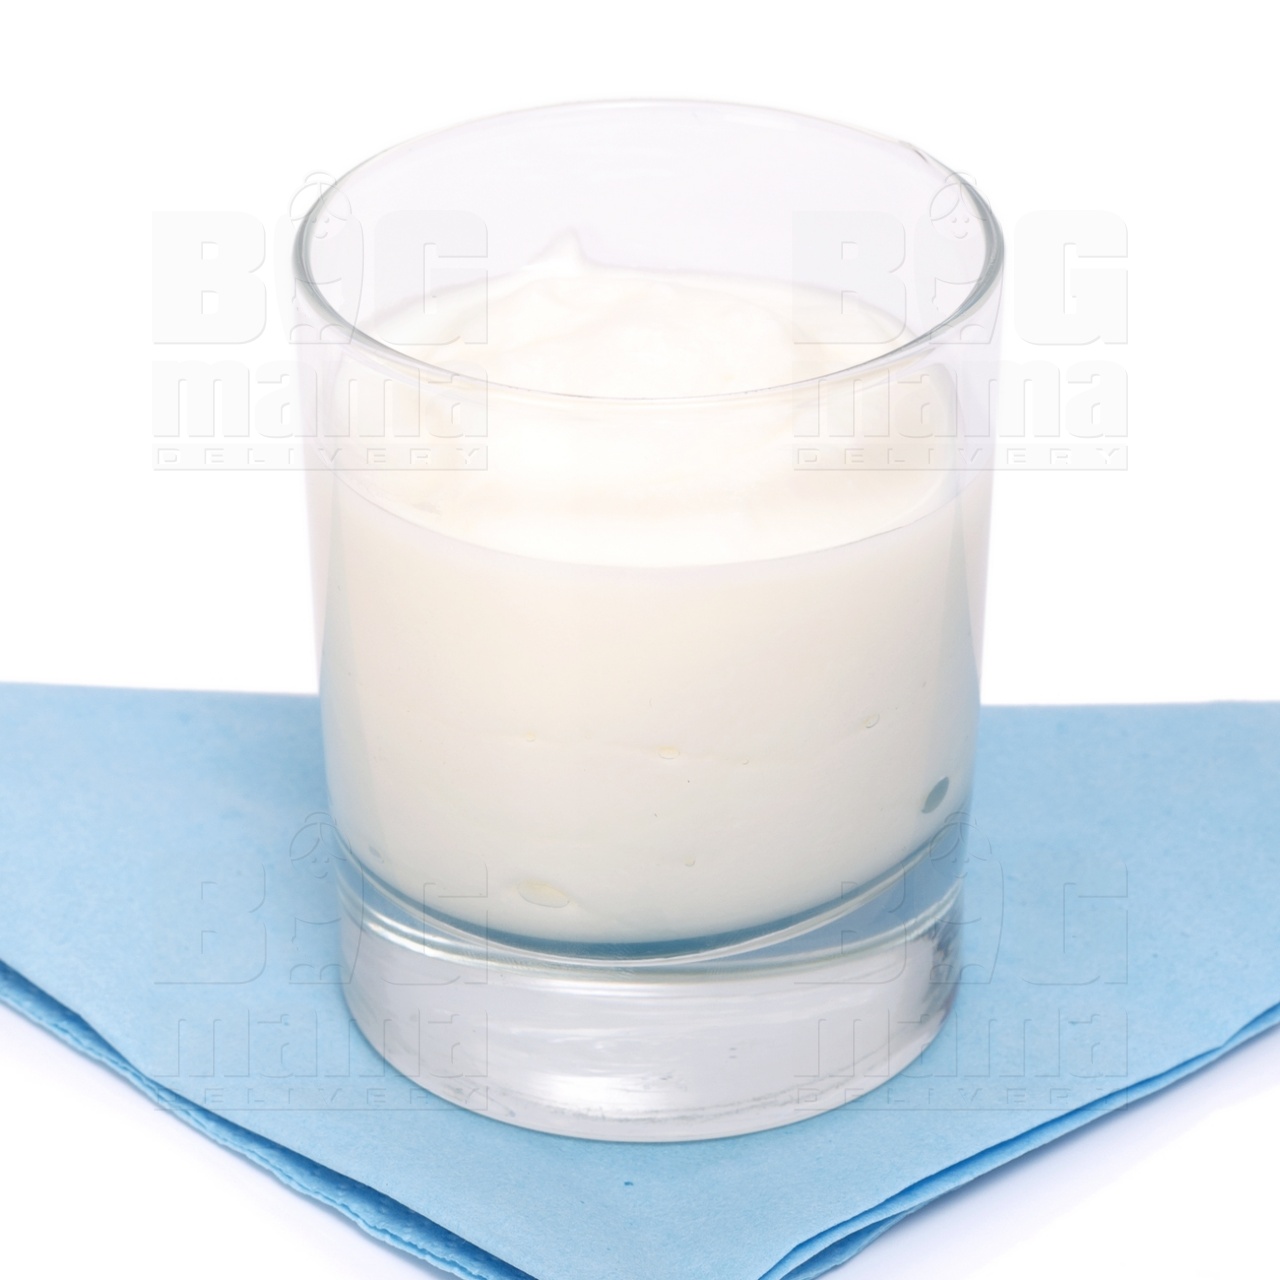 Product #86 image - Yoghurt